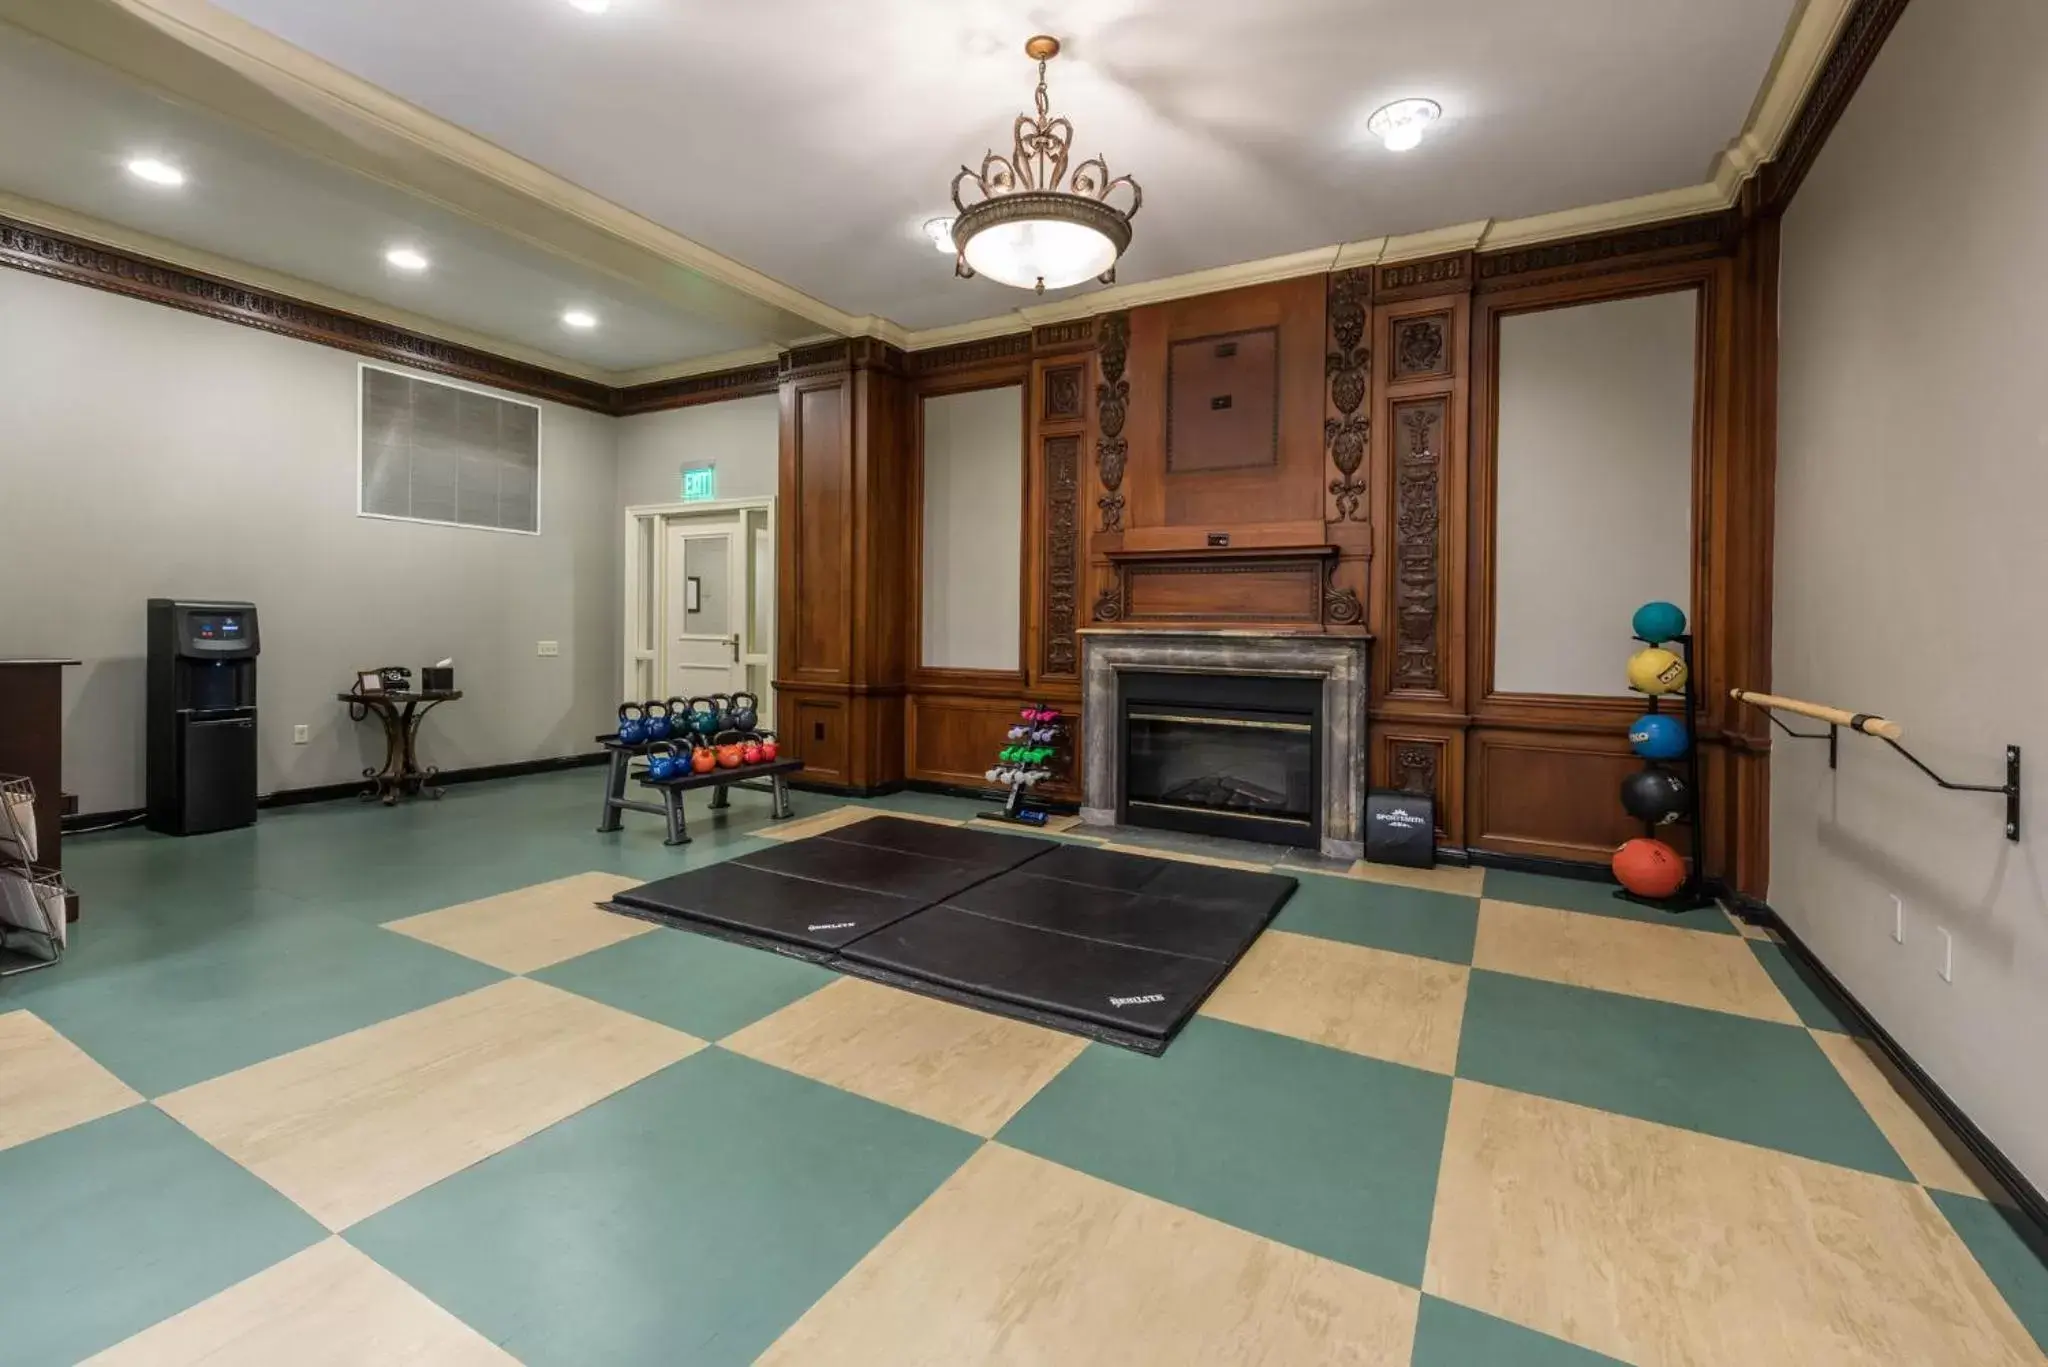 Fitness centre/facilities in Omni William Penn Hotel